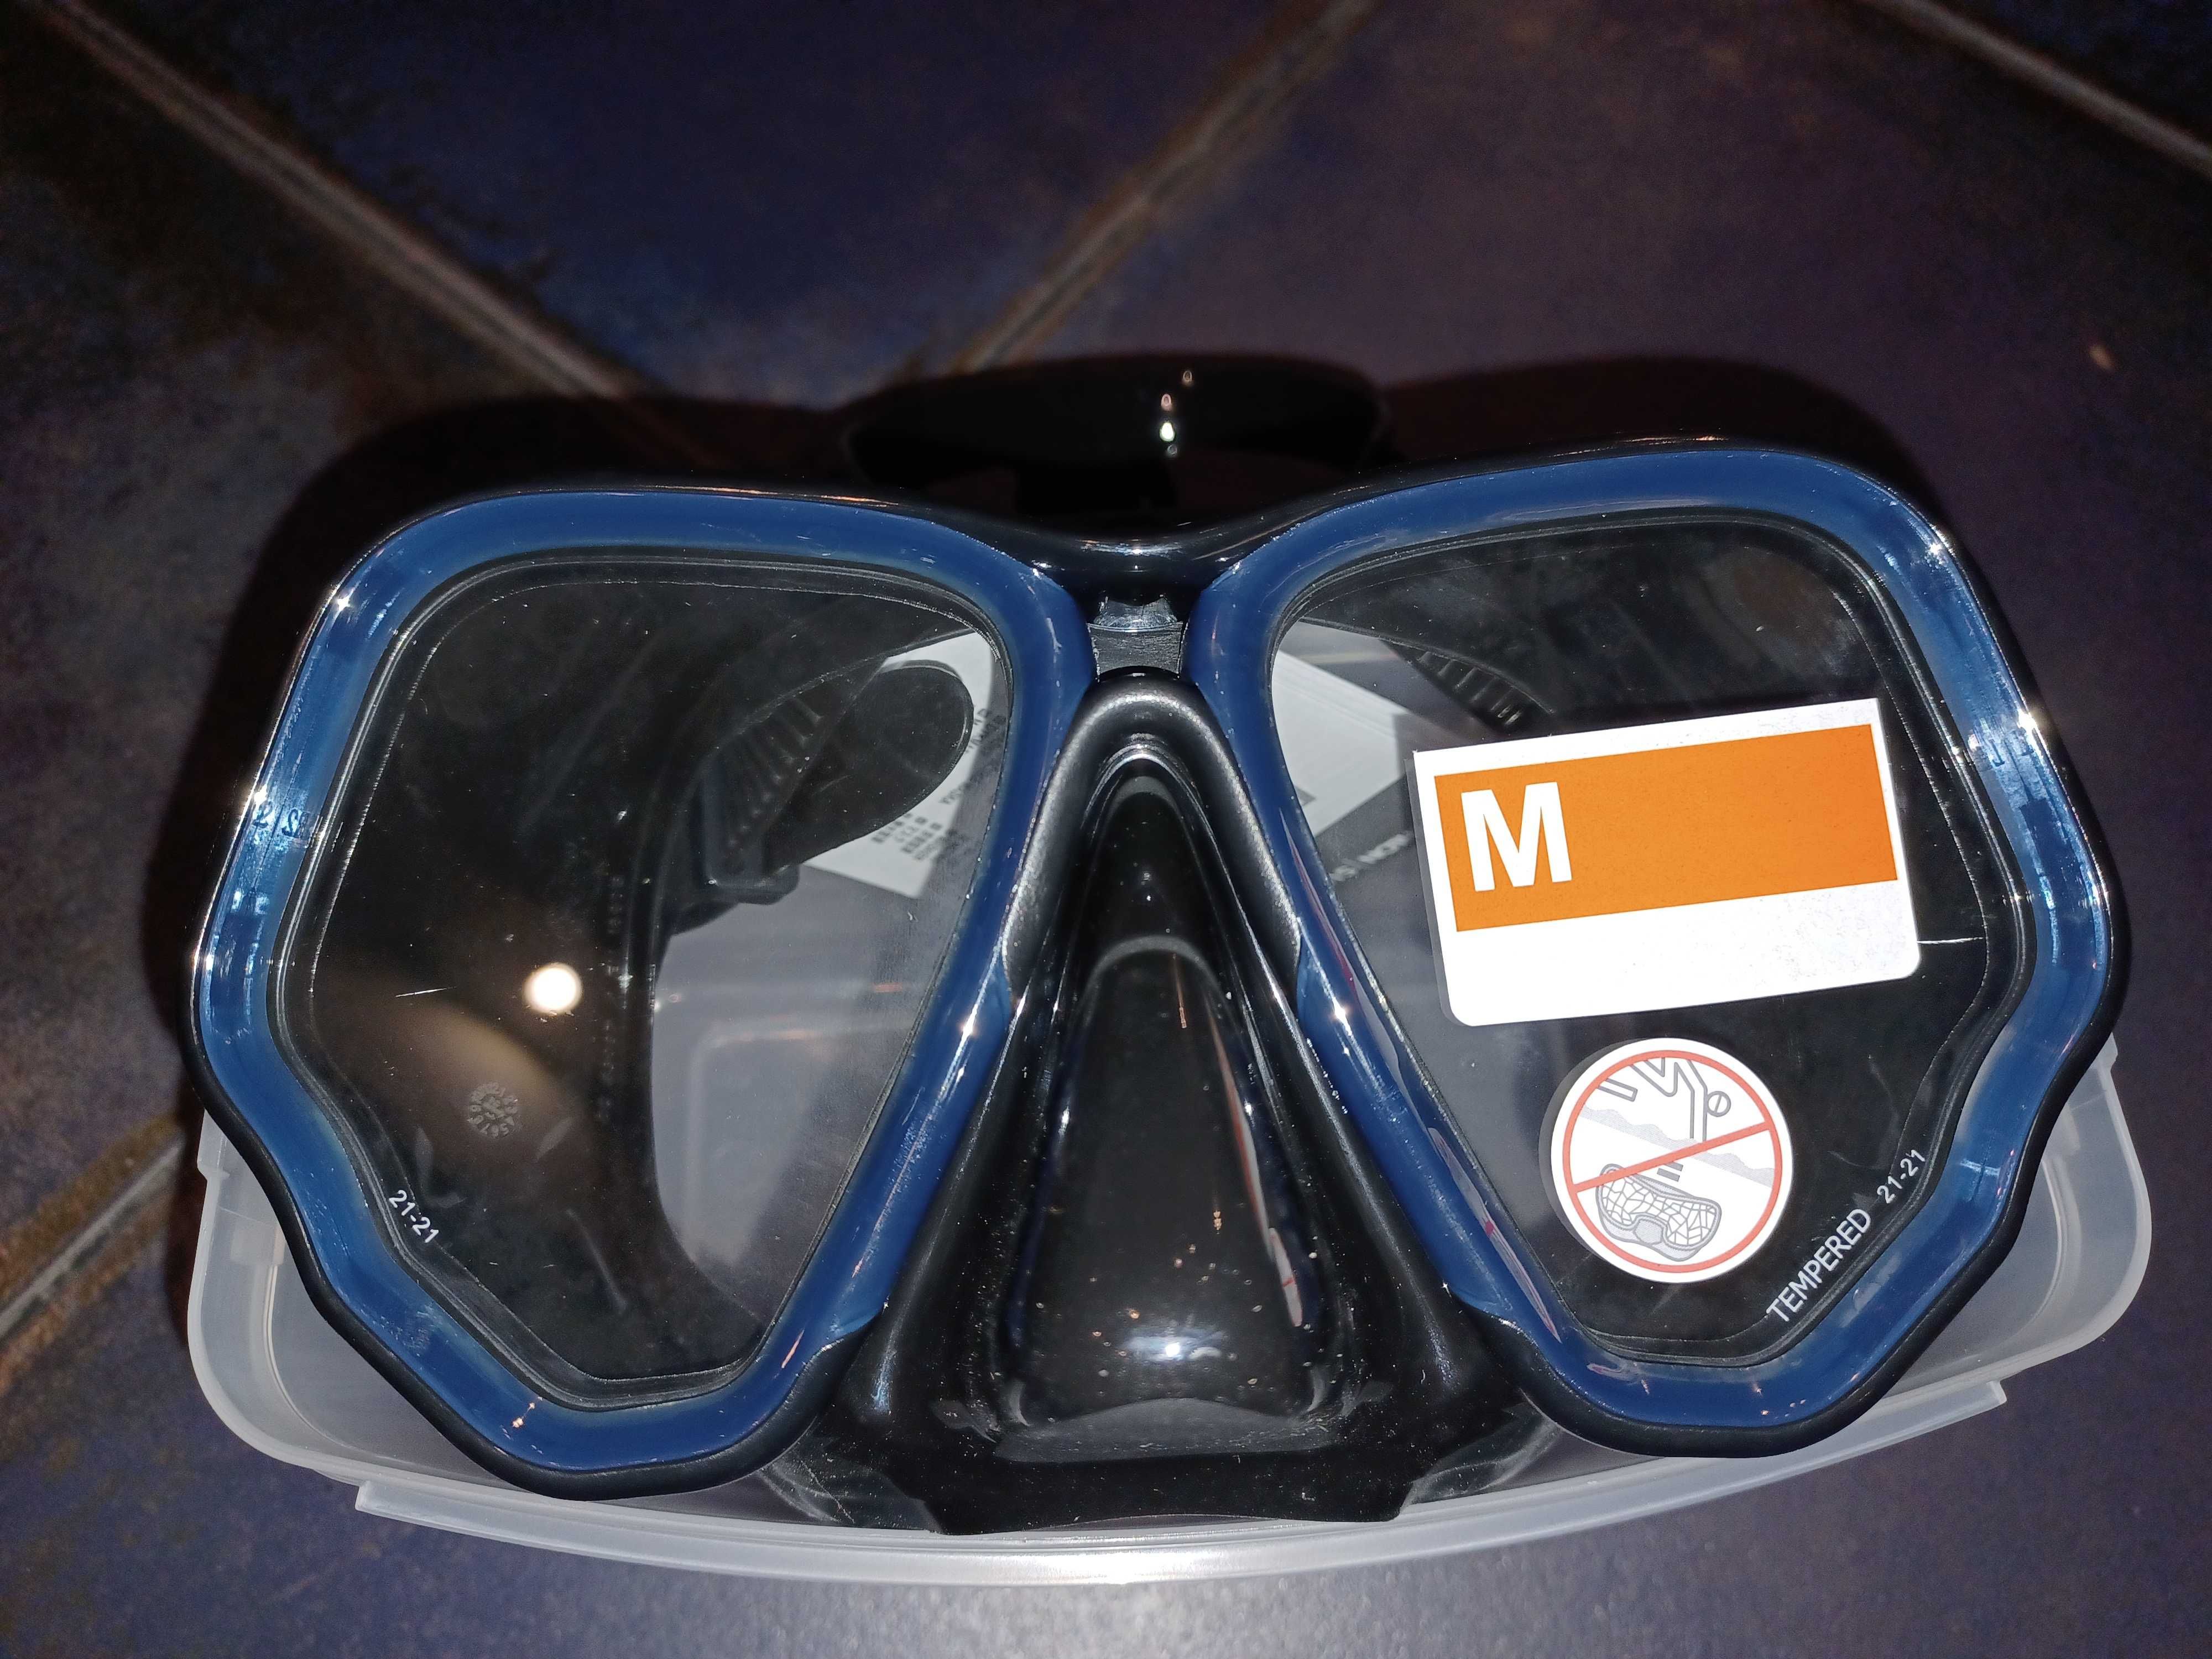 Maska do nurkowania Subea 500 Dual niebieska. Rozmiar M - Nowa